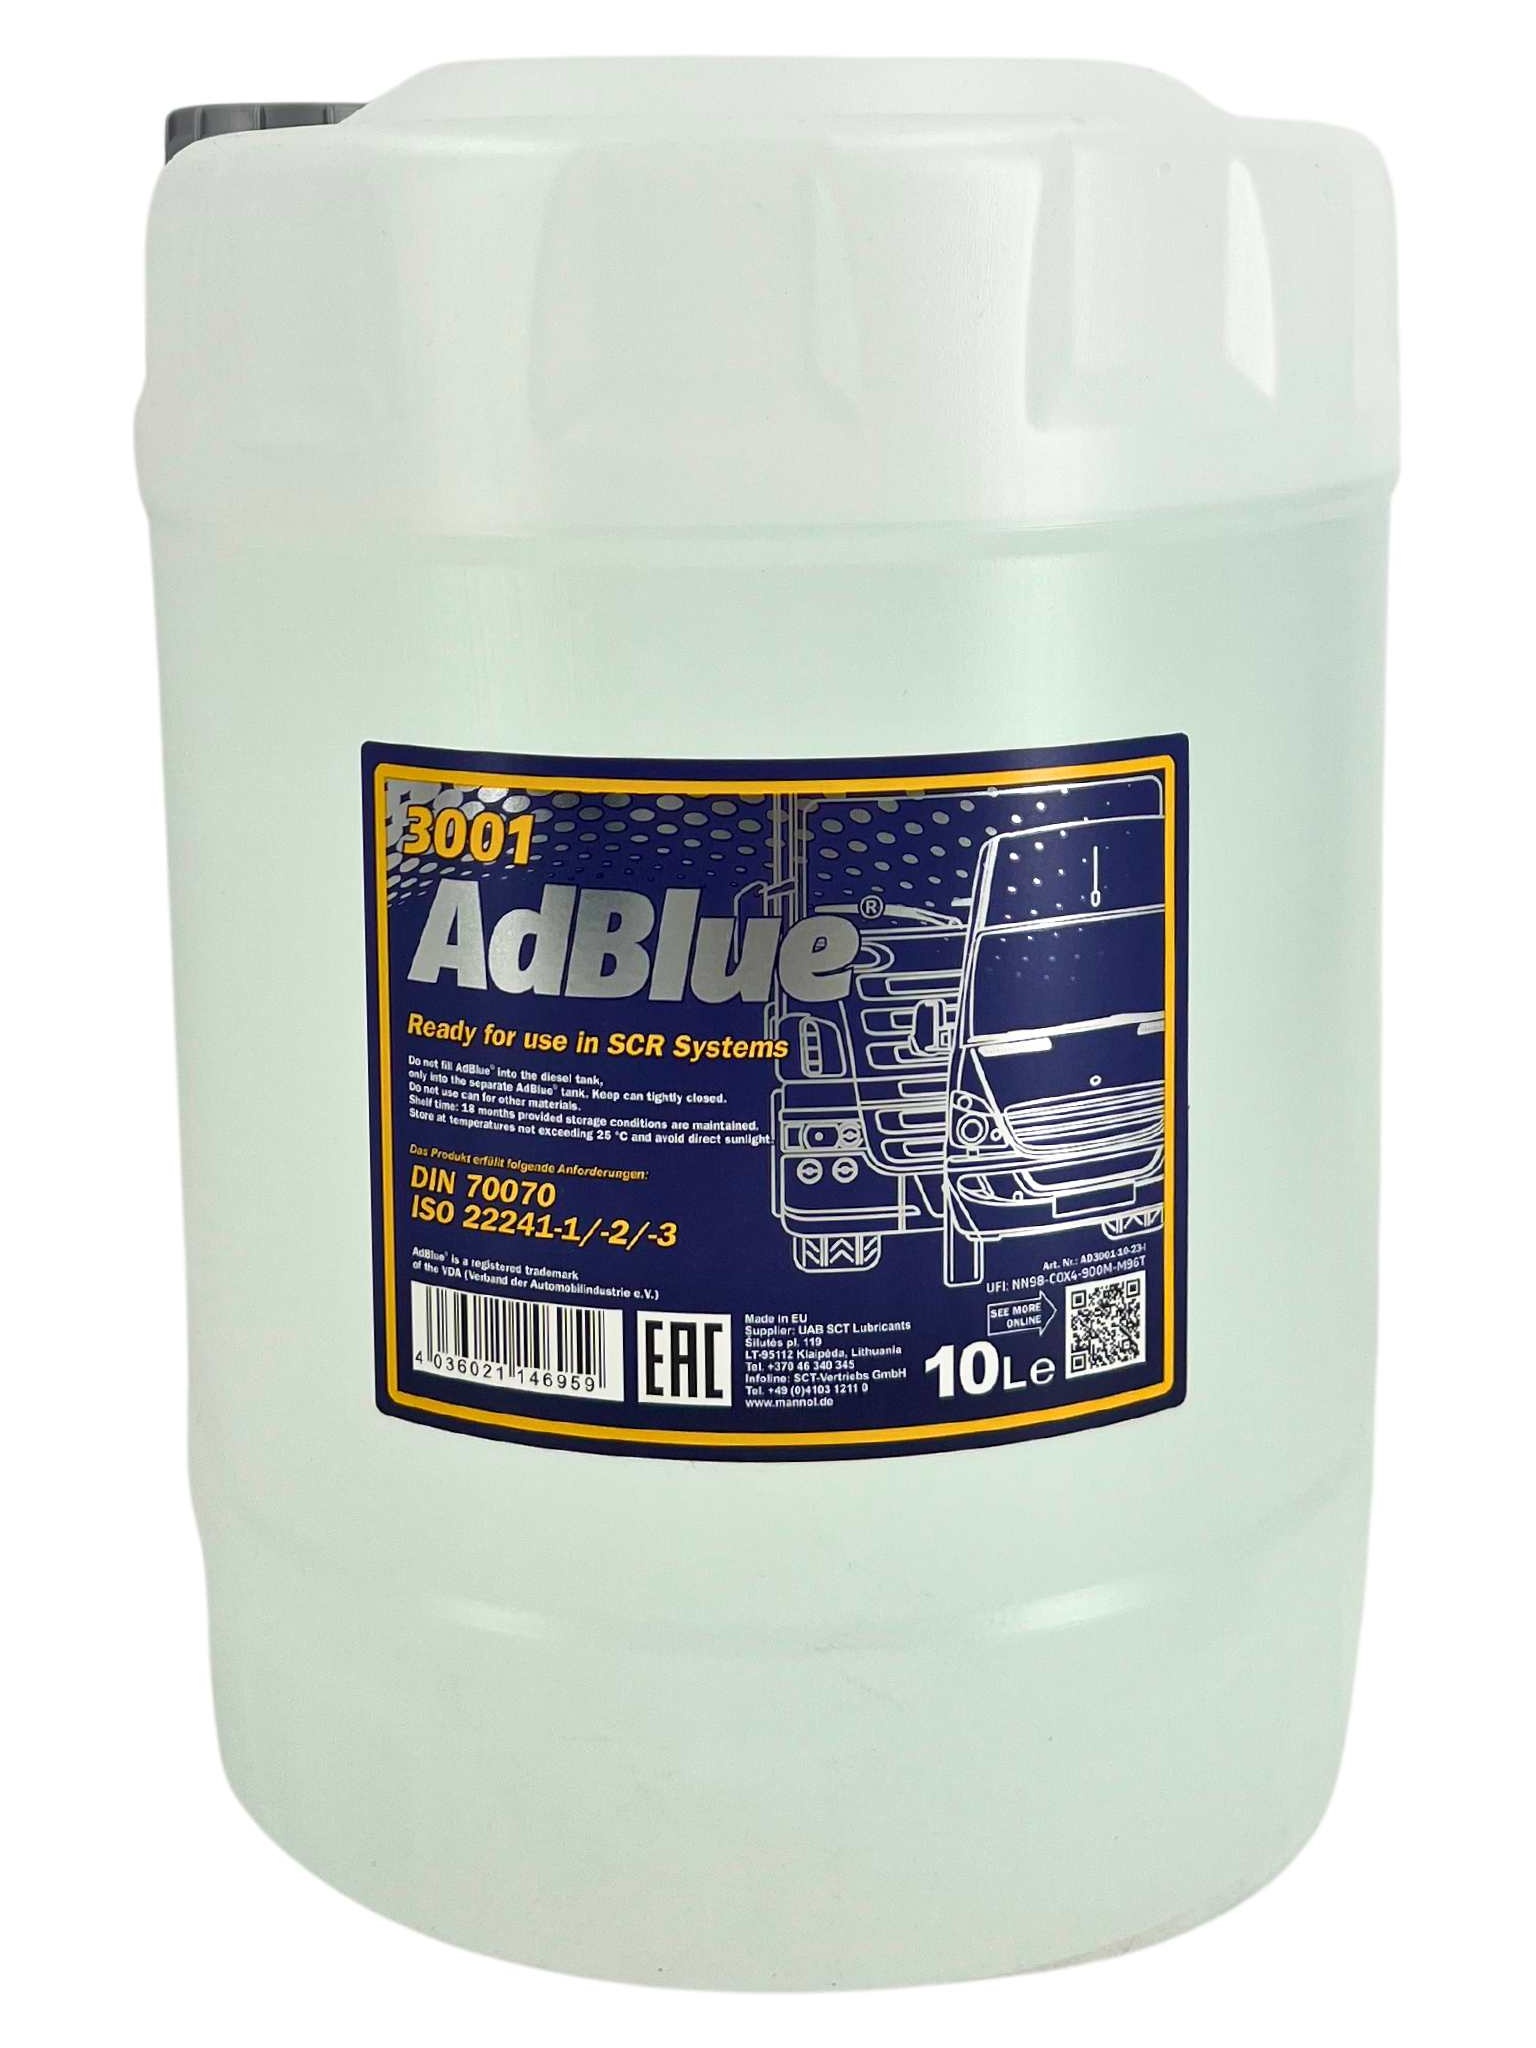 Bild von Adblue Harnstofflösung Abgasreinigung Diesel Harnstoff: 3001-10